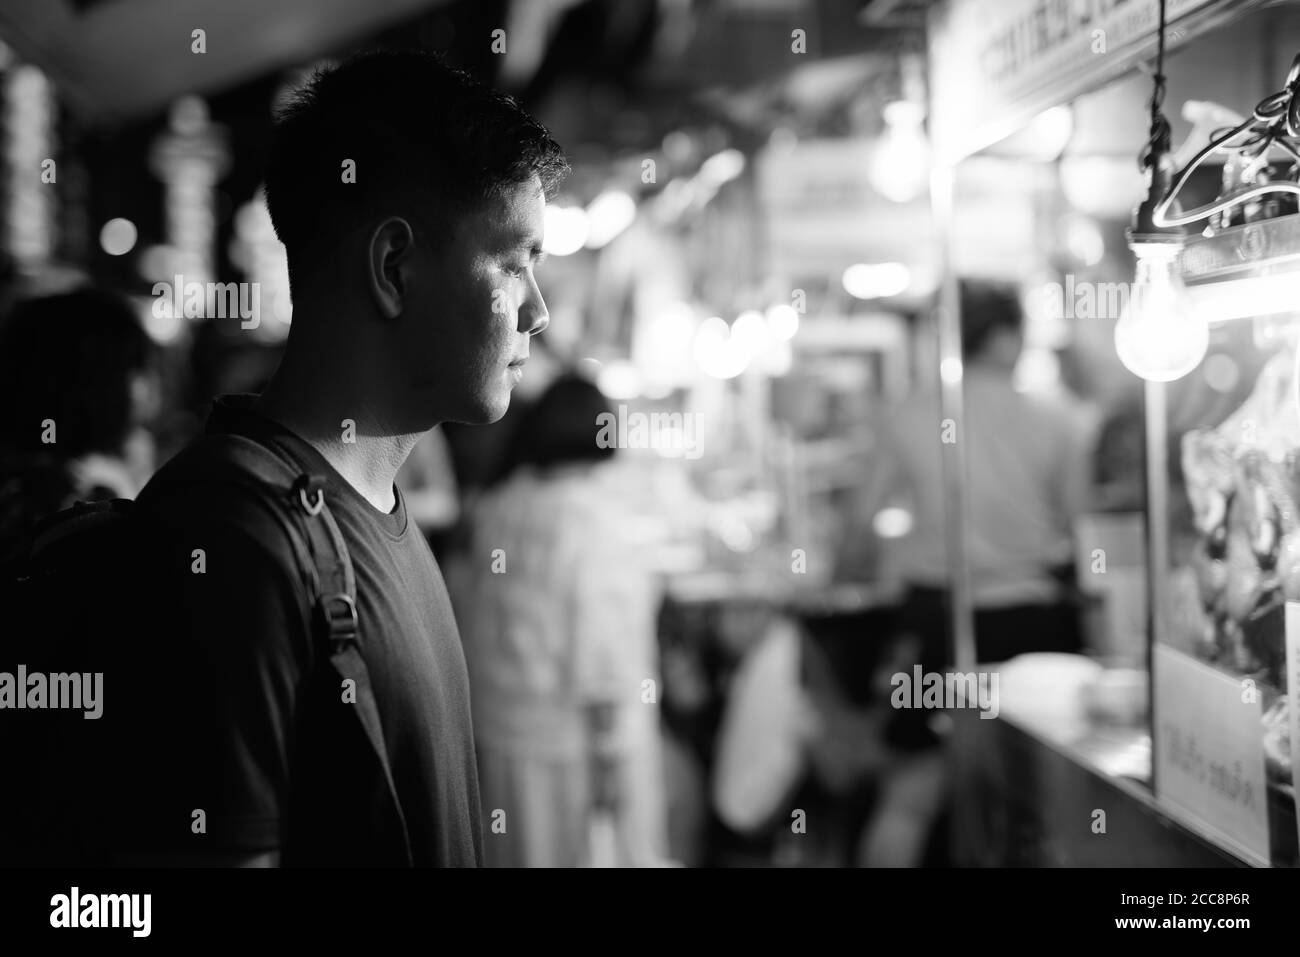 Porträt eines jungen, gutaussehenden asiatischen Touristen, der in Chinatown die Stadt erkundet Stockfoto